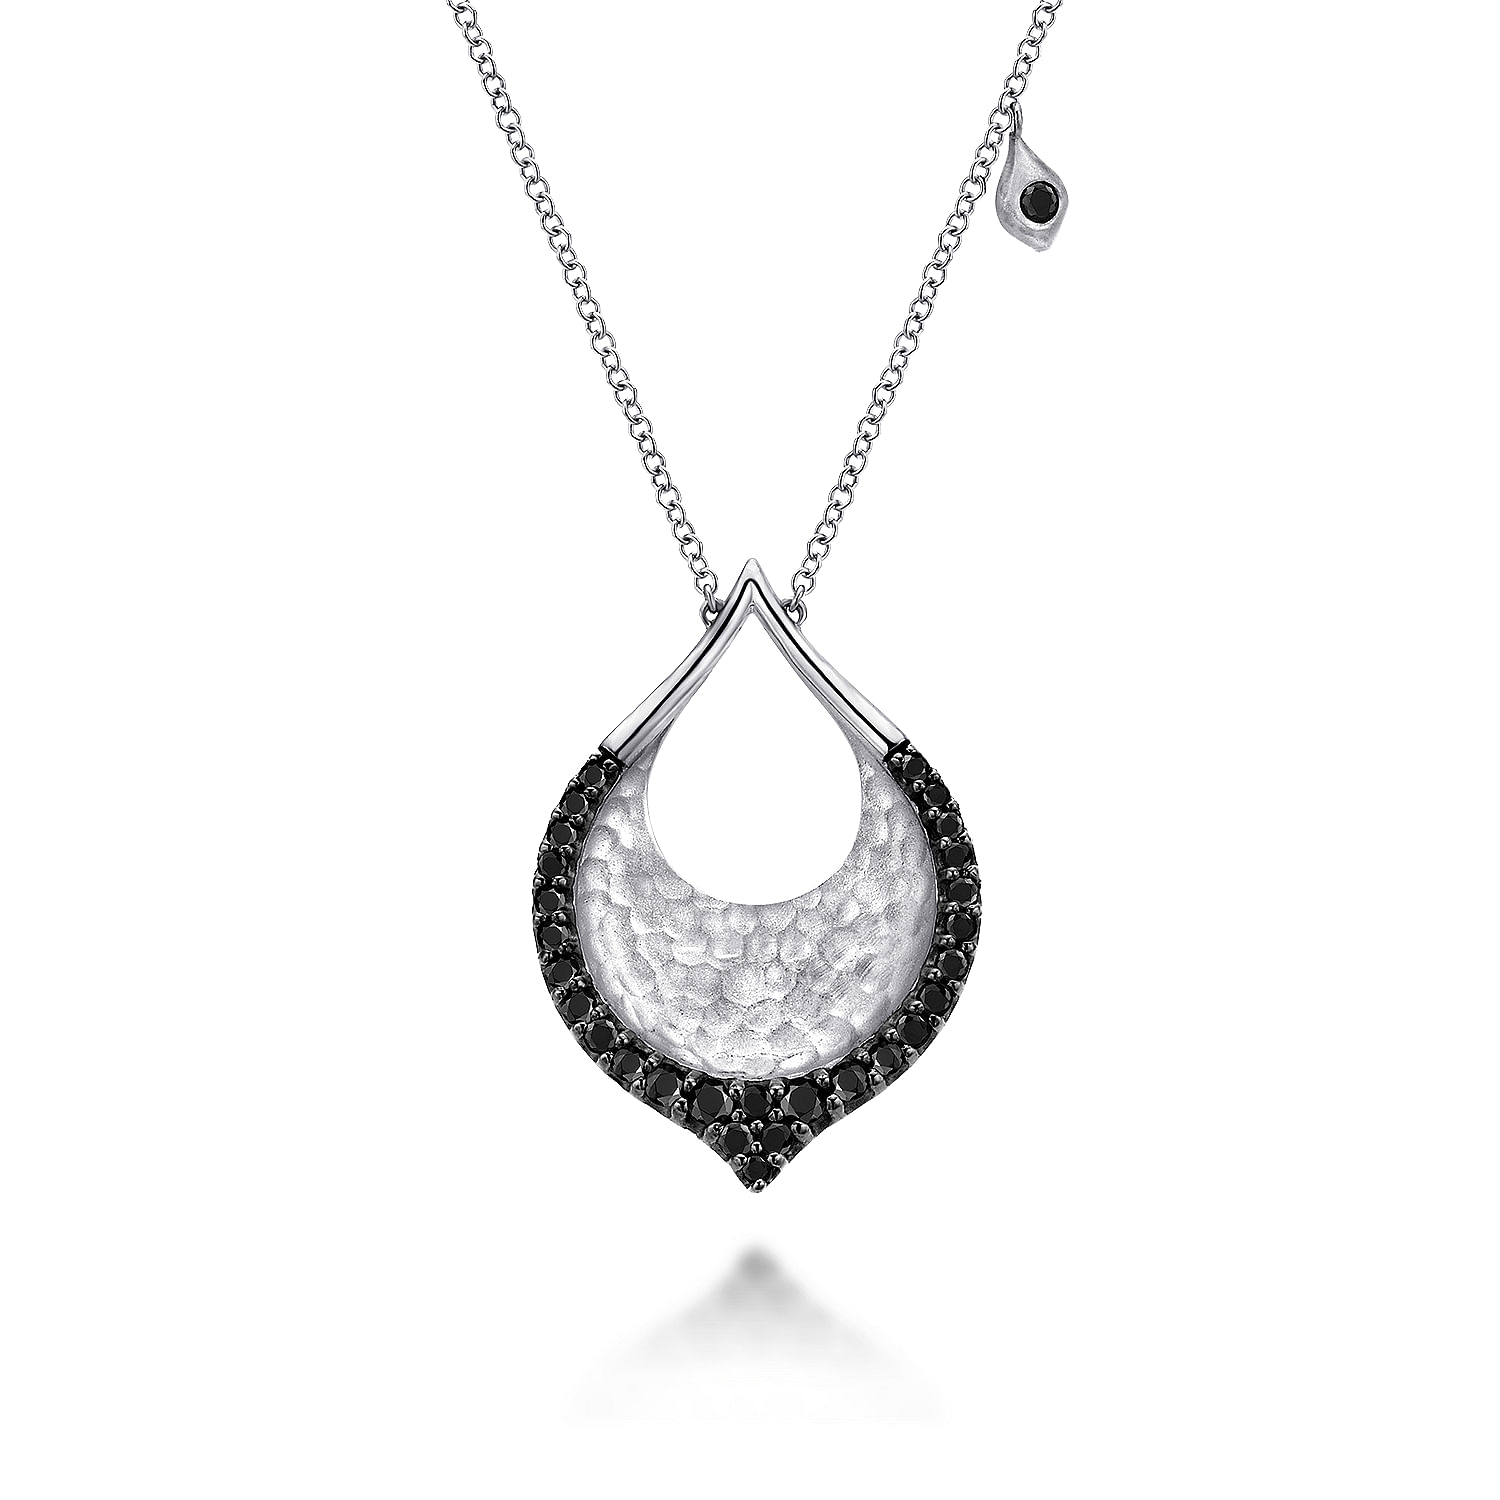 Hammered-925-Sterling-Silver-Black-Spinel-Teardrop-Pendant-Necklace1